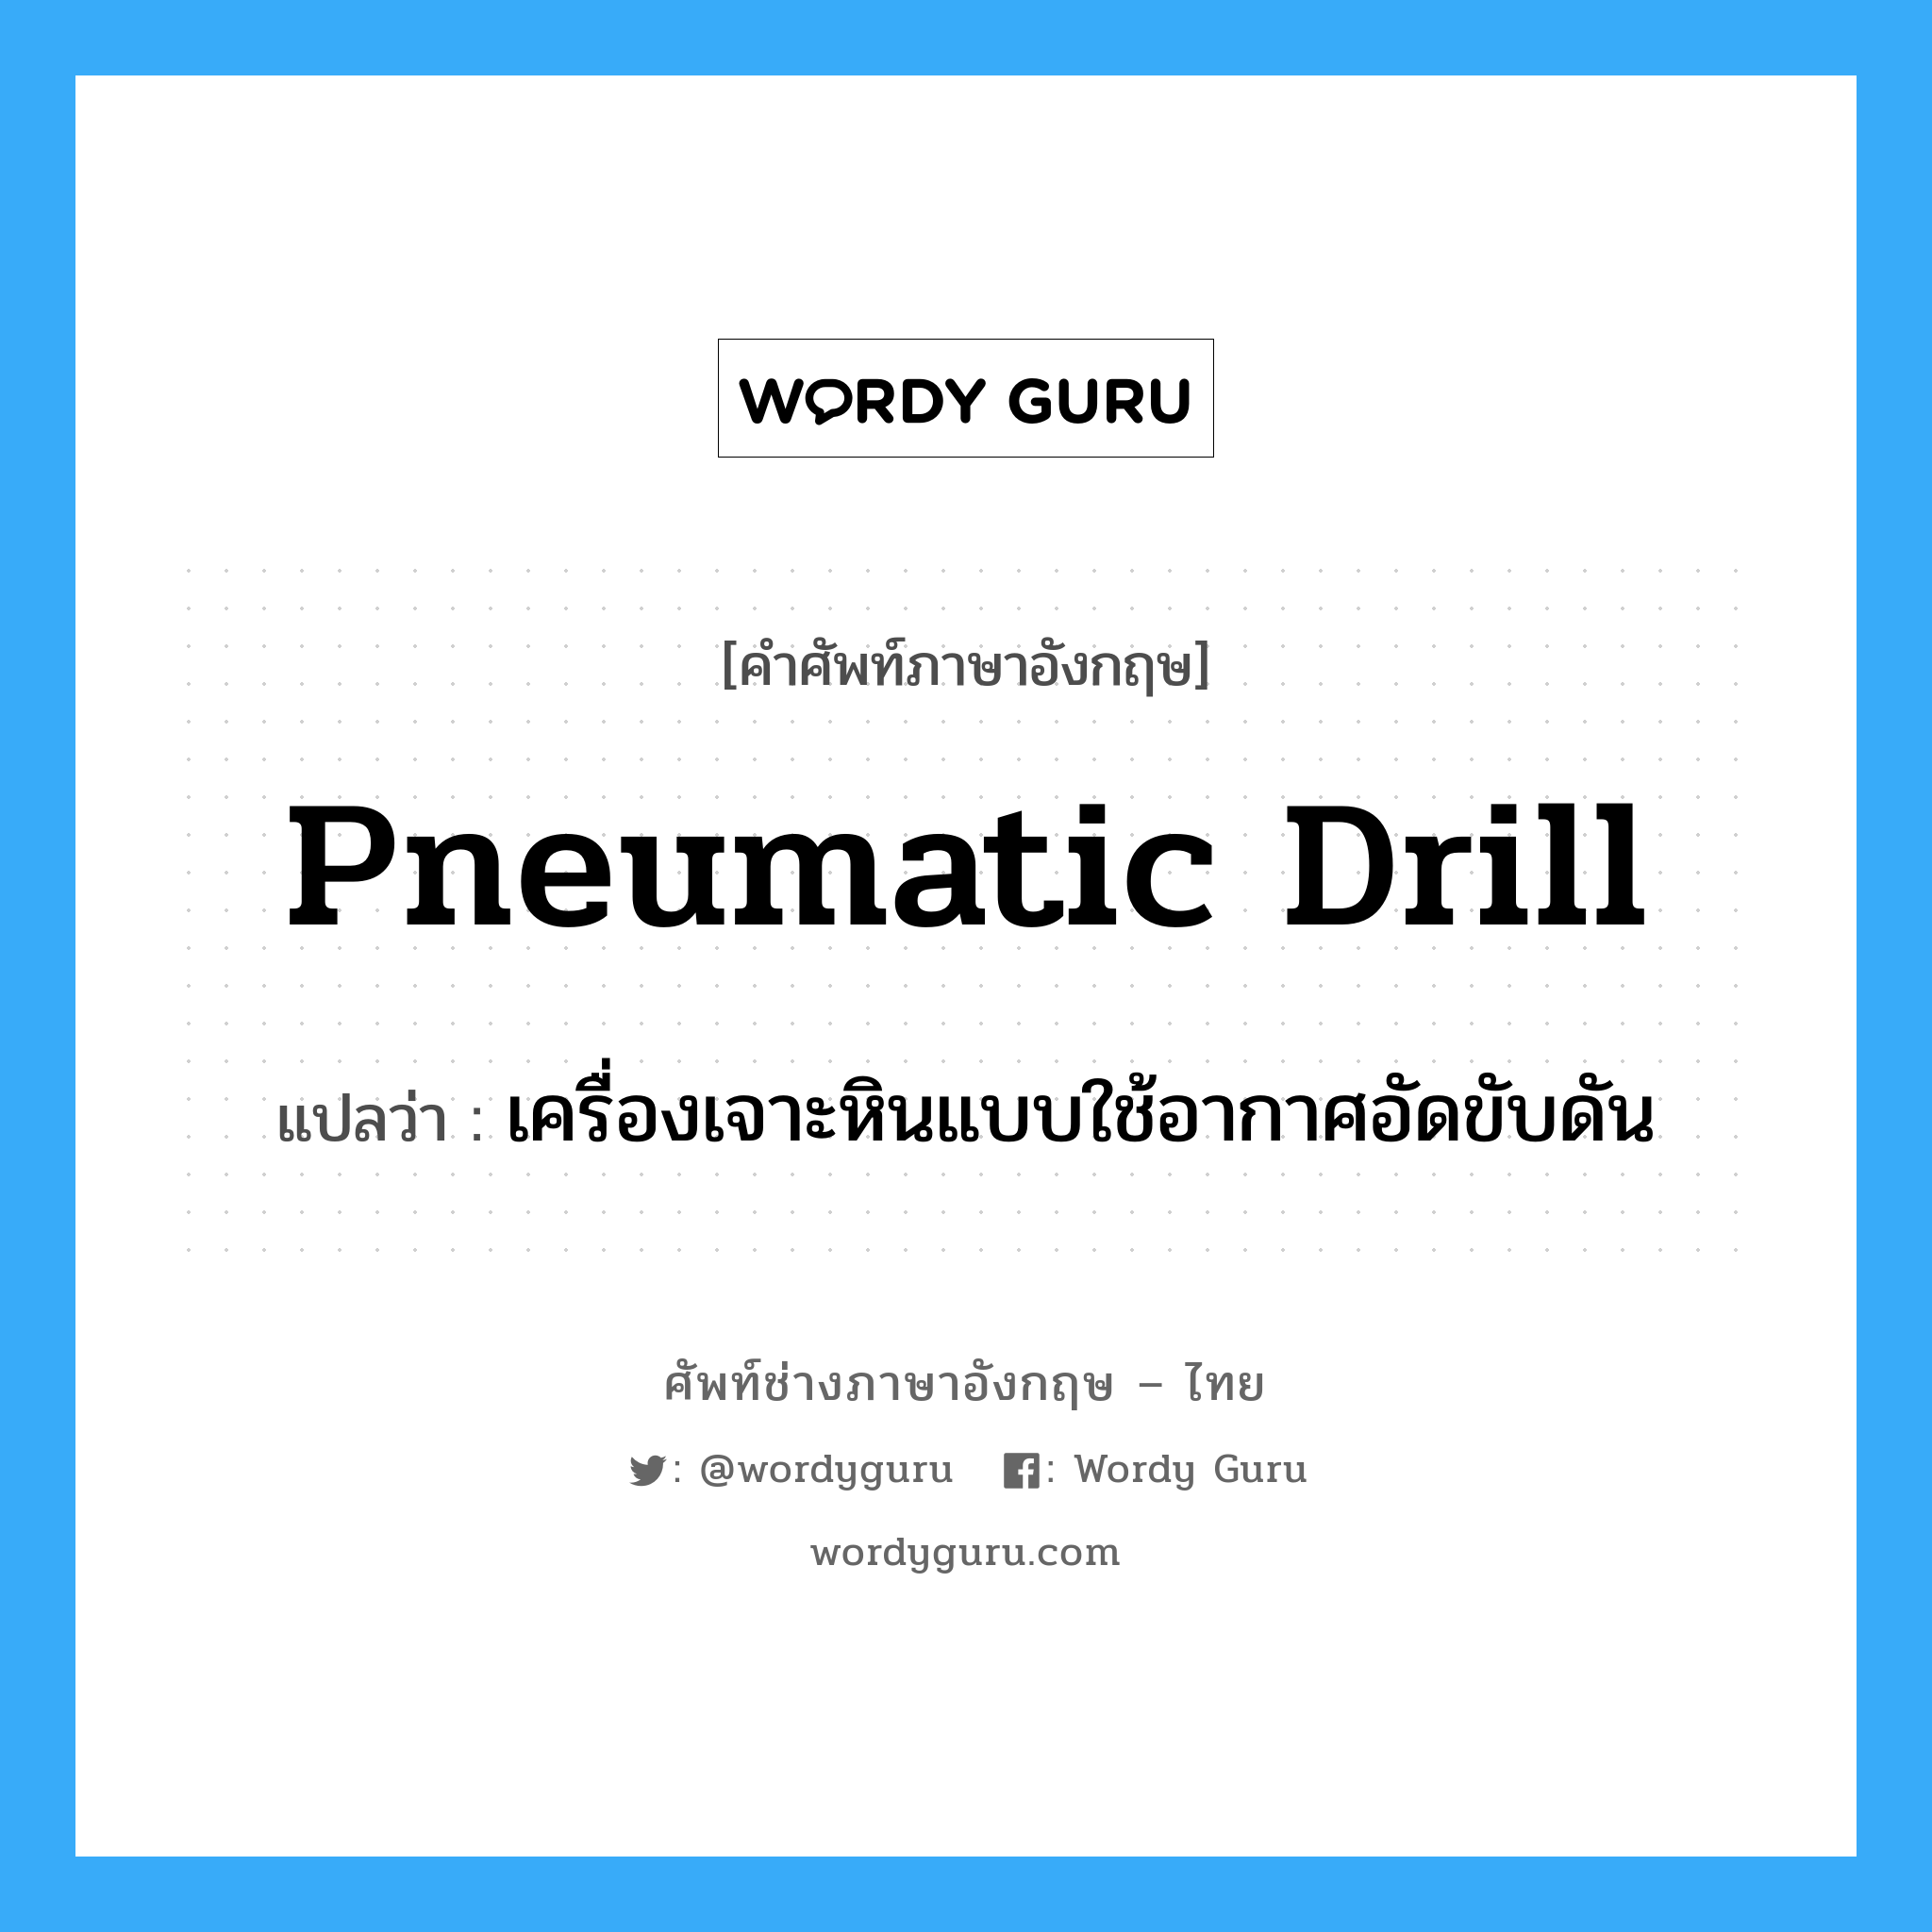 pneumatic drill แปลว่า?, คำศัพท์ช่างภาษาอังกฤษ - ไทย pneumatic drill คำศัพท์ภาษาอังกฤษ pneumatic drill แปลว่า เครื่องเจาะหินแบบใช้อากาศอัดขับดัน